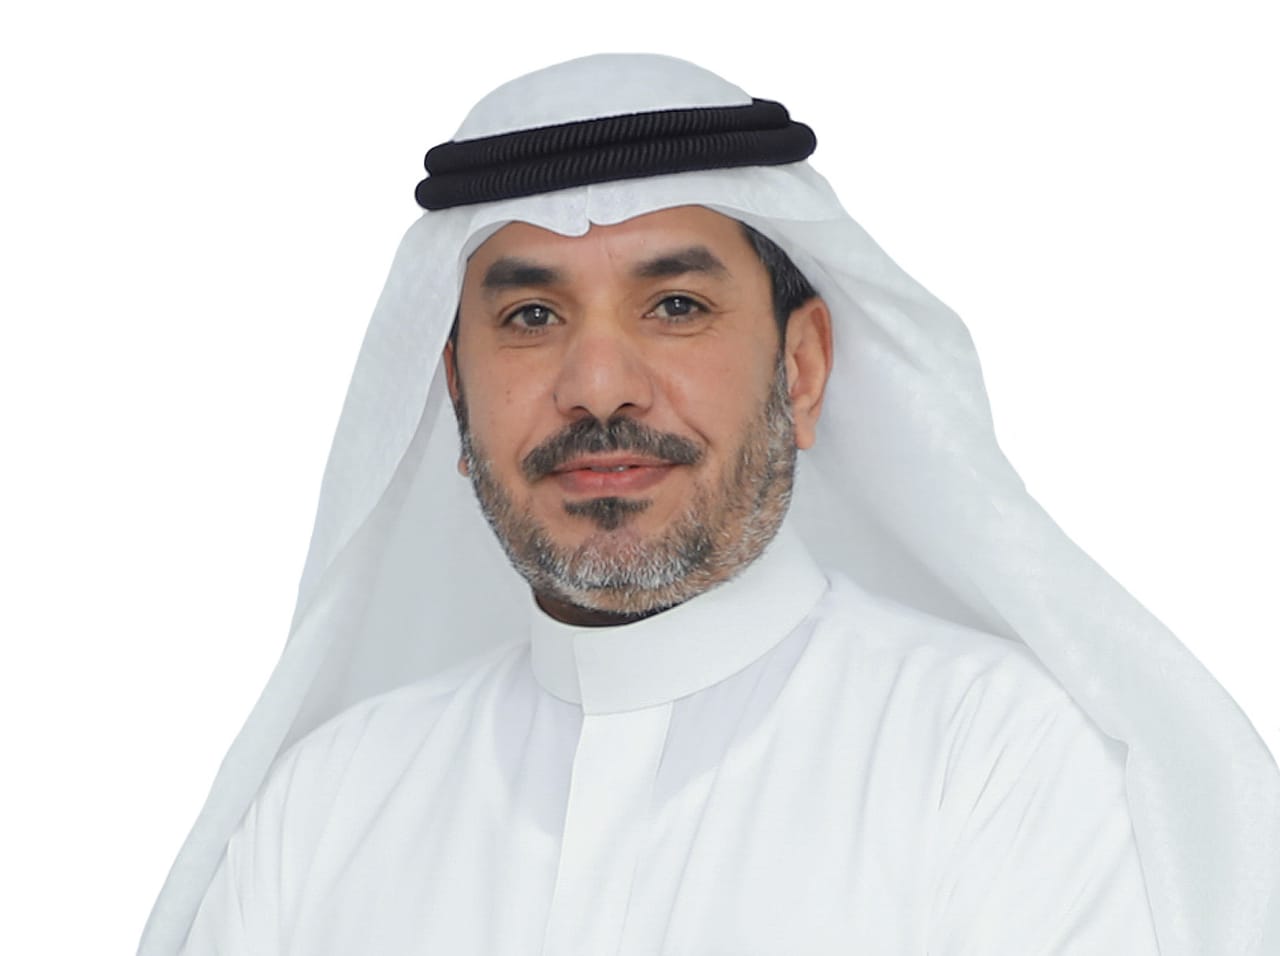 السعودية للكهرباء تُعين خالد القنون نائبًا للتوزيع وخدمات المشتركين